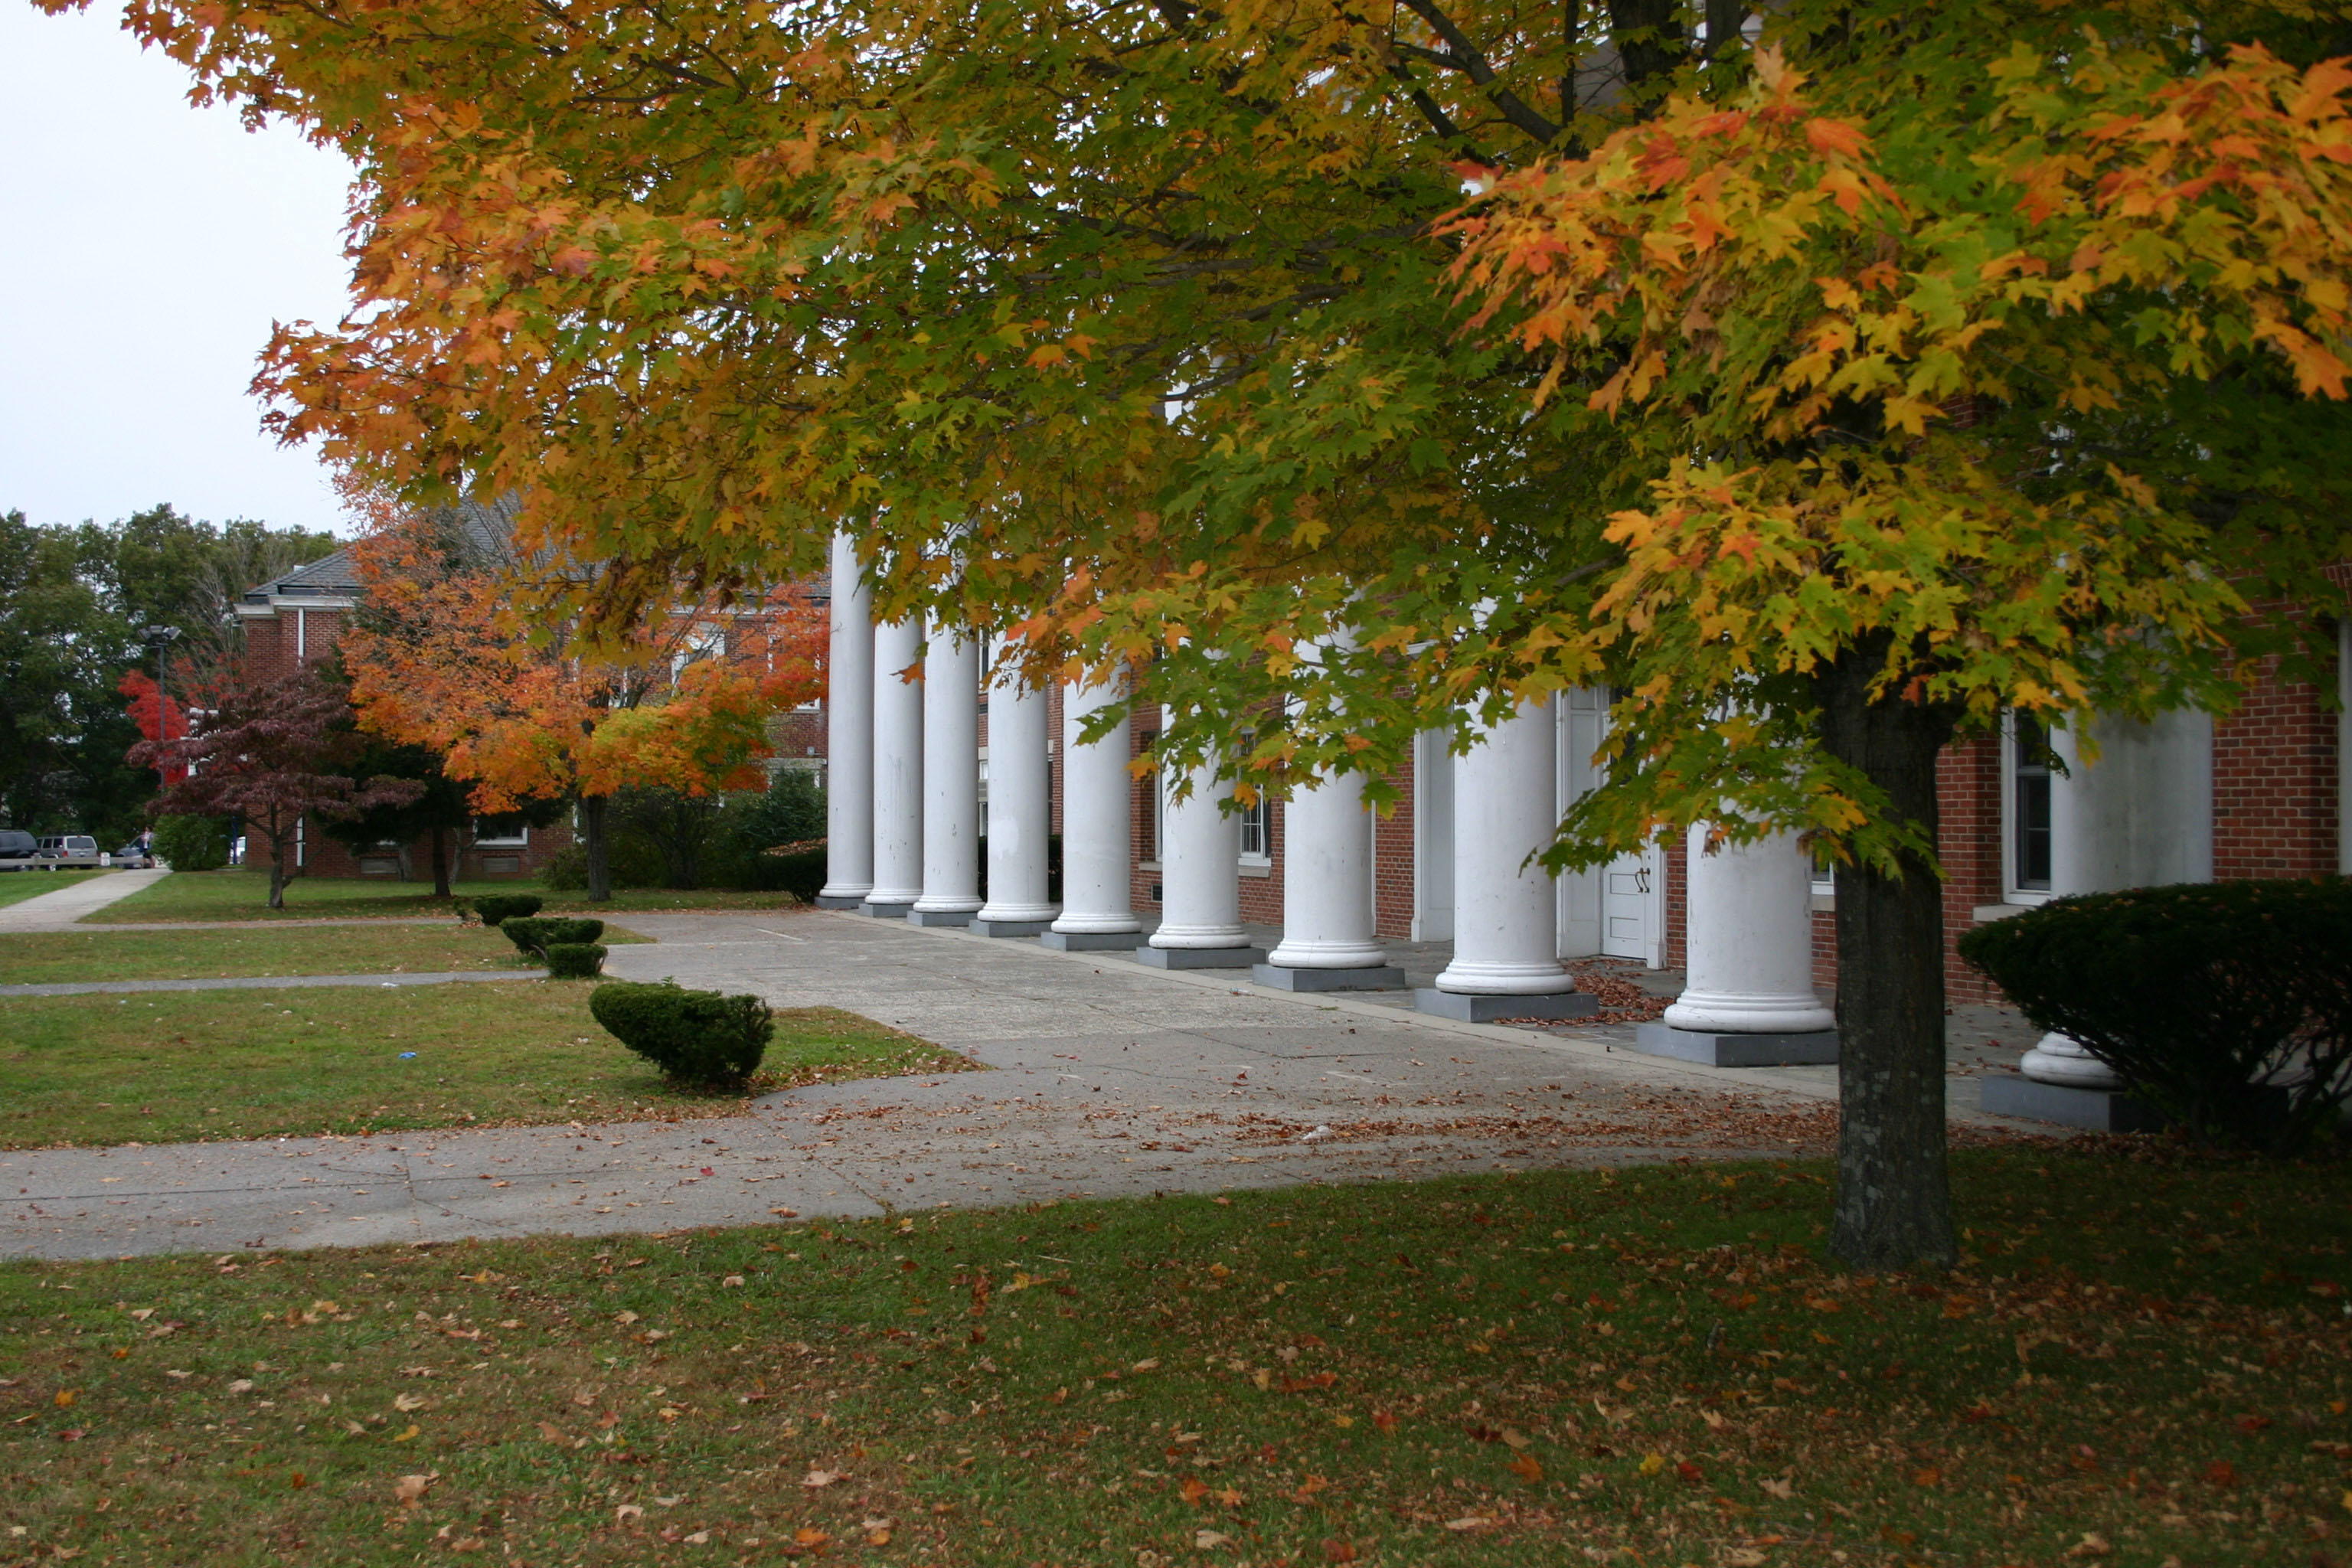 pillars of a school in autumn